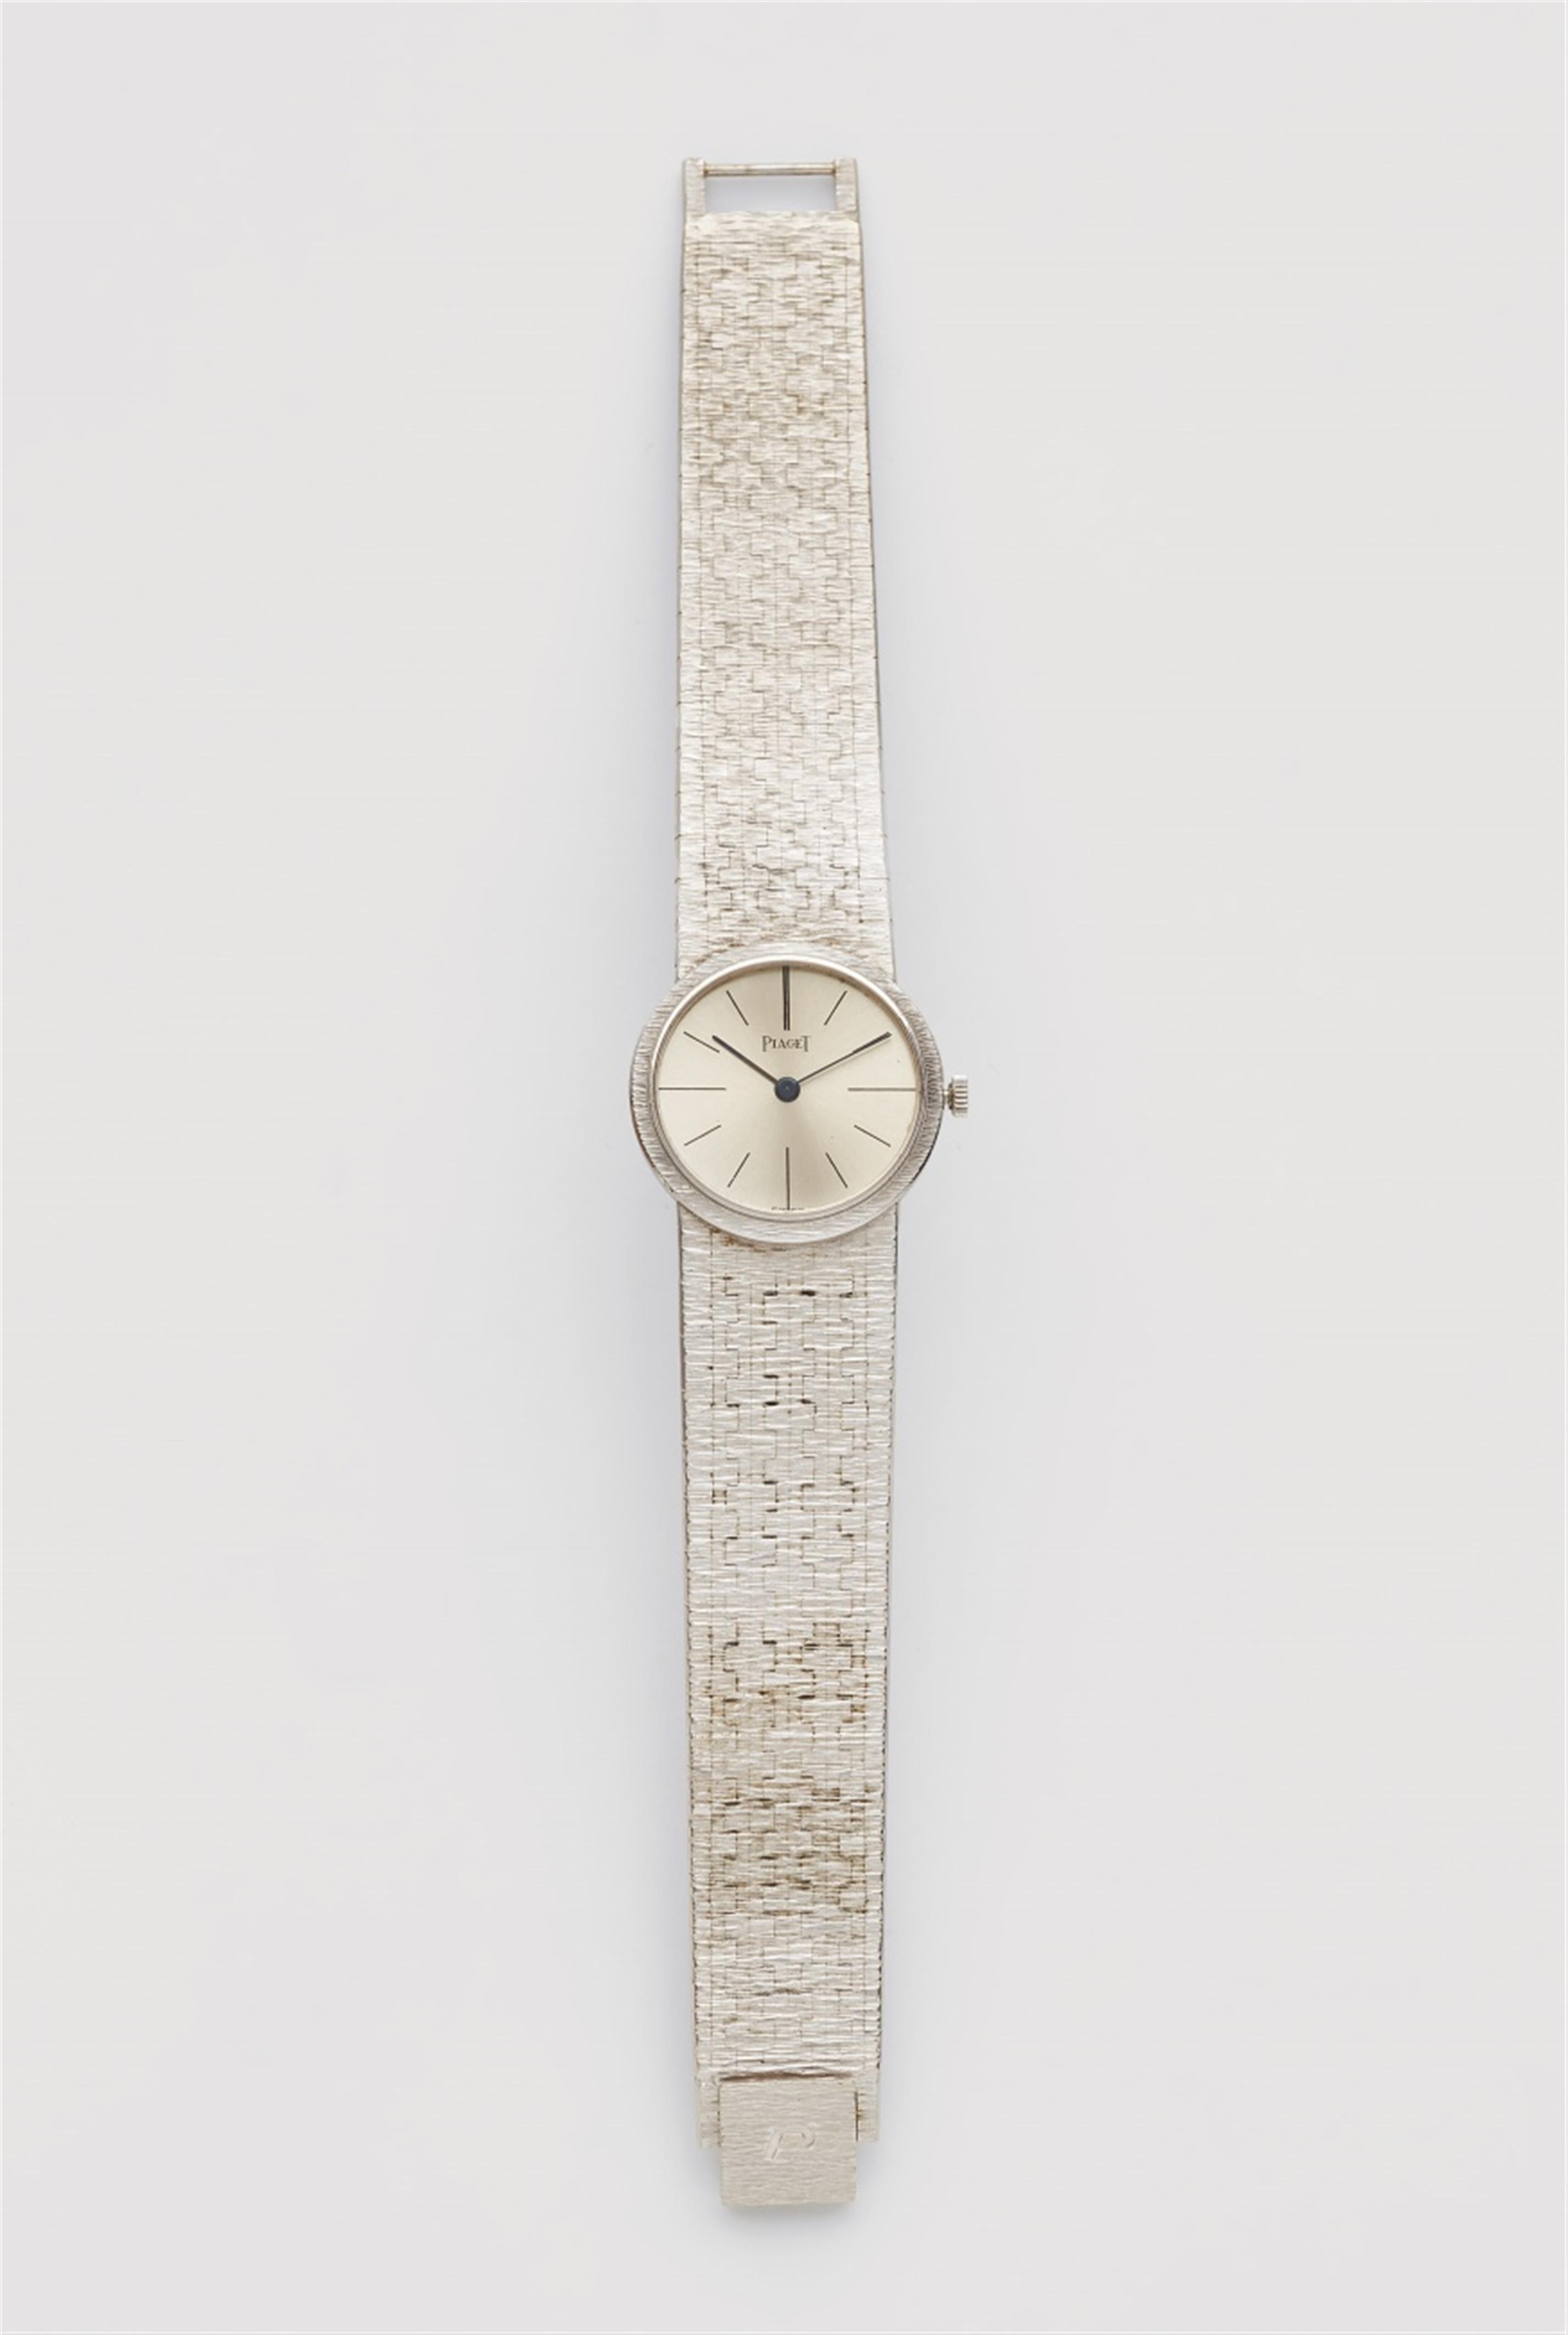 A ladies 18k white gold wristwatch - 